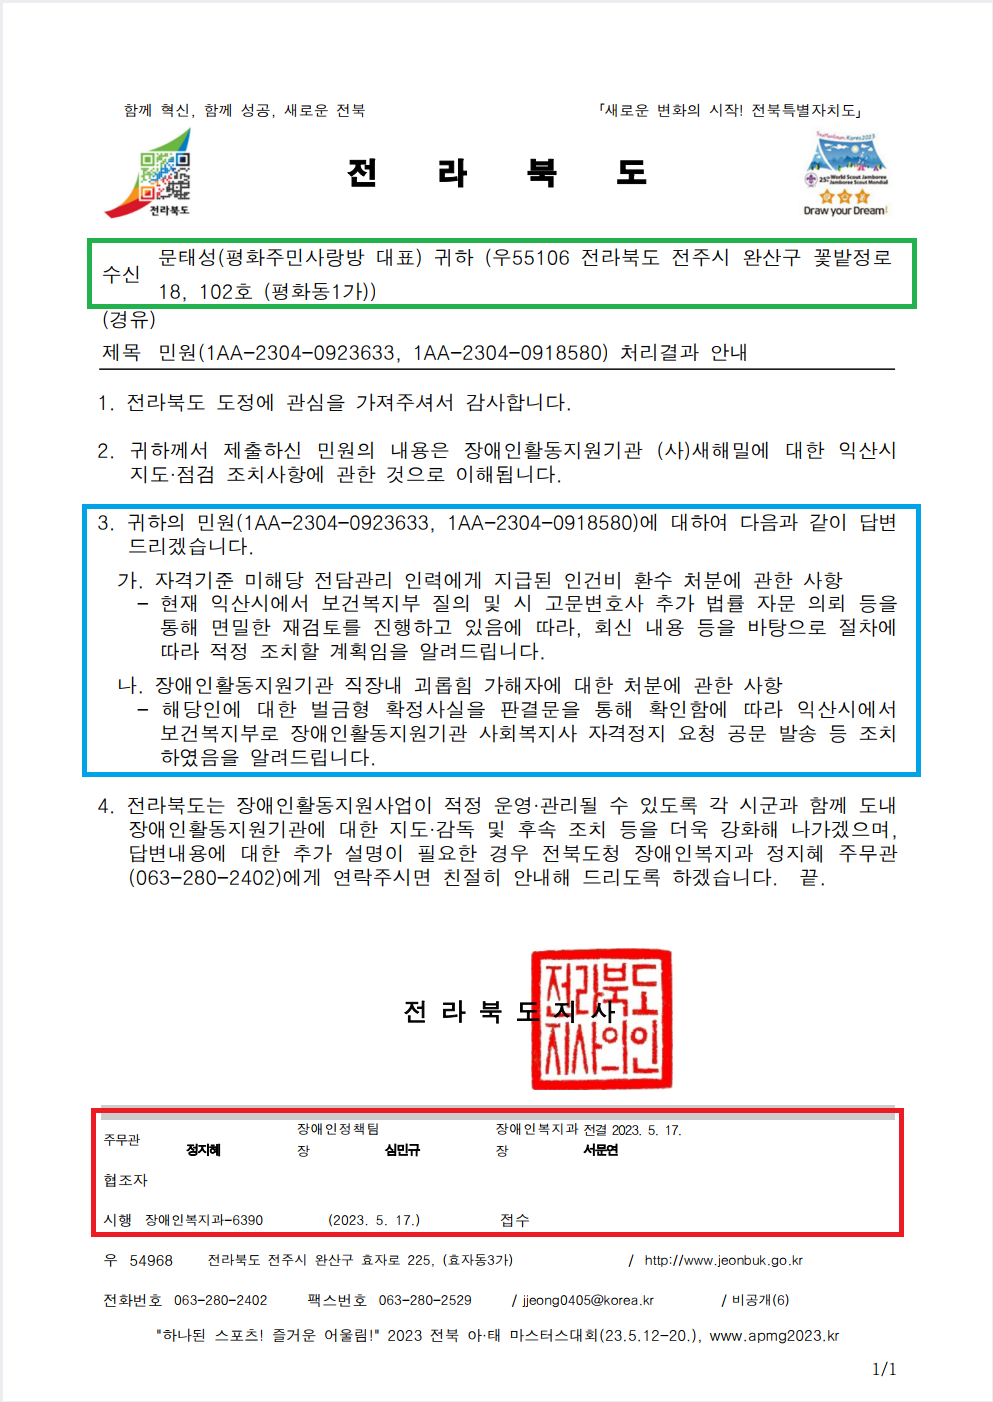 전북도 장애인복지과-6390(2023.5.17)호_민원회신.png